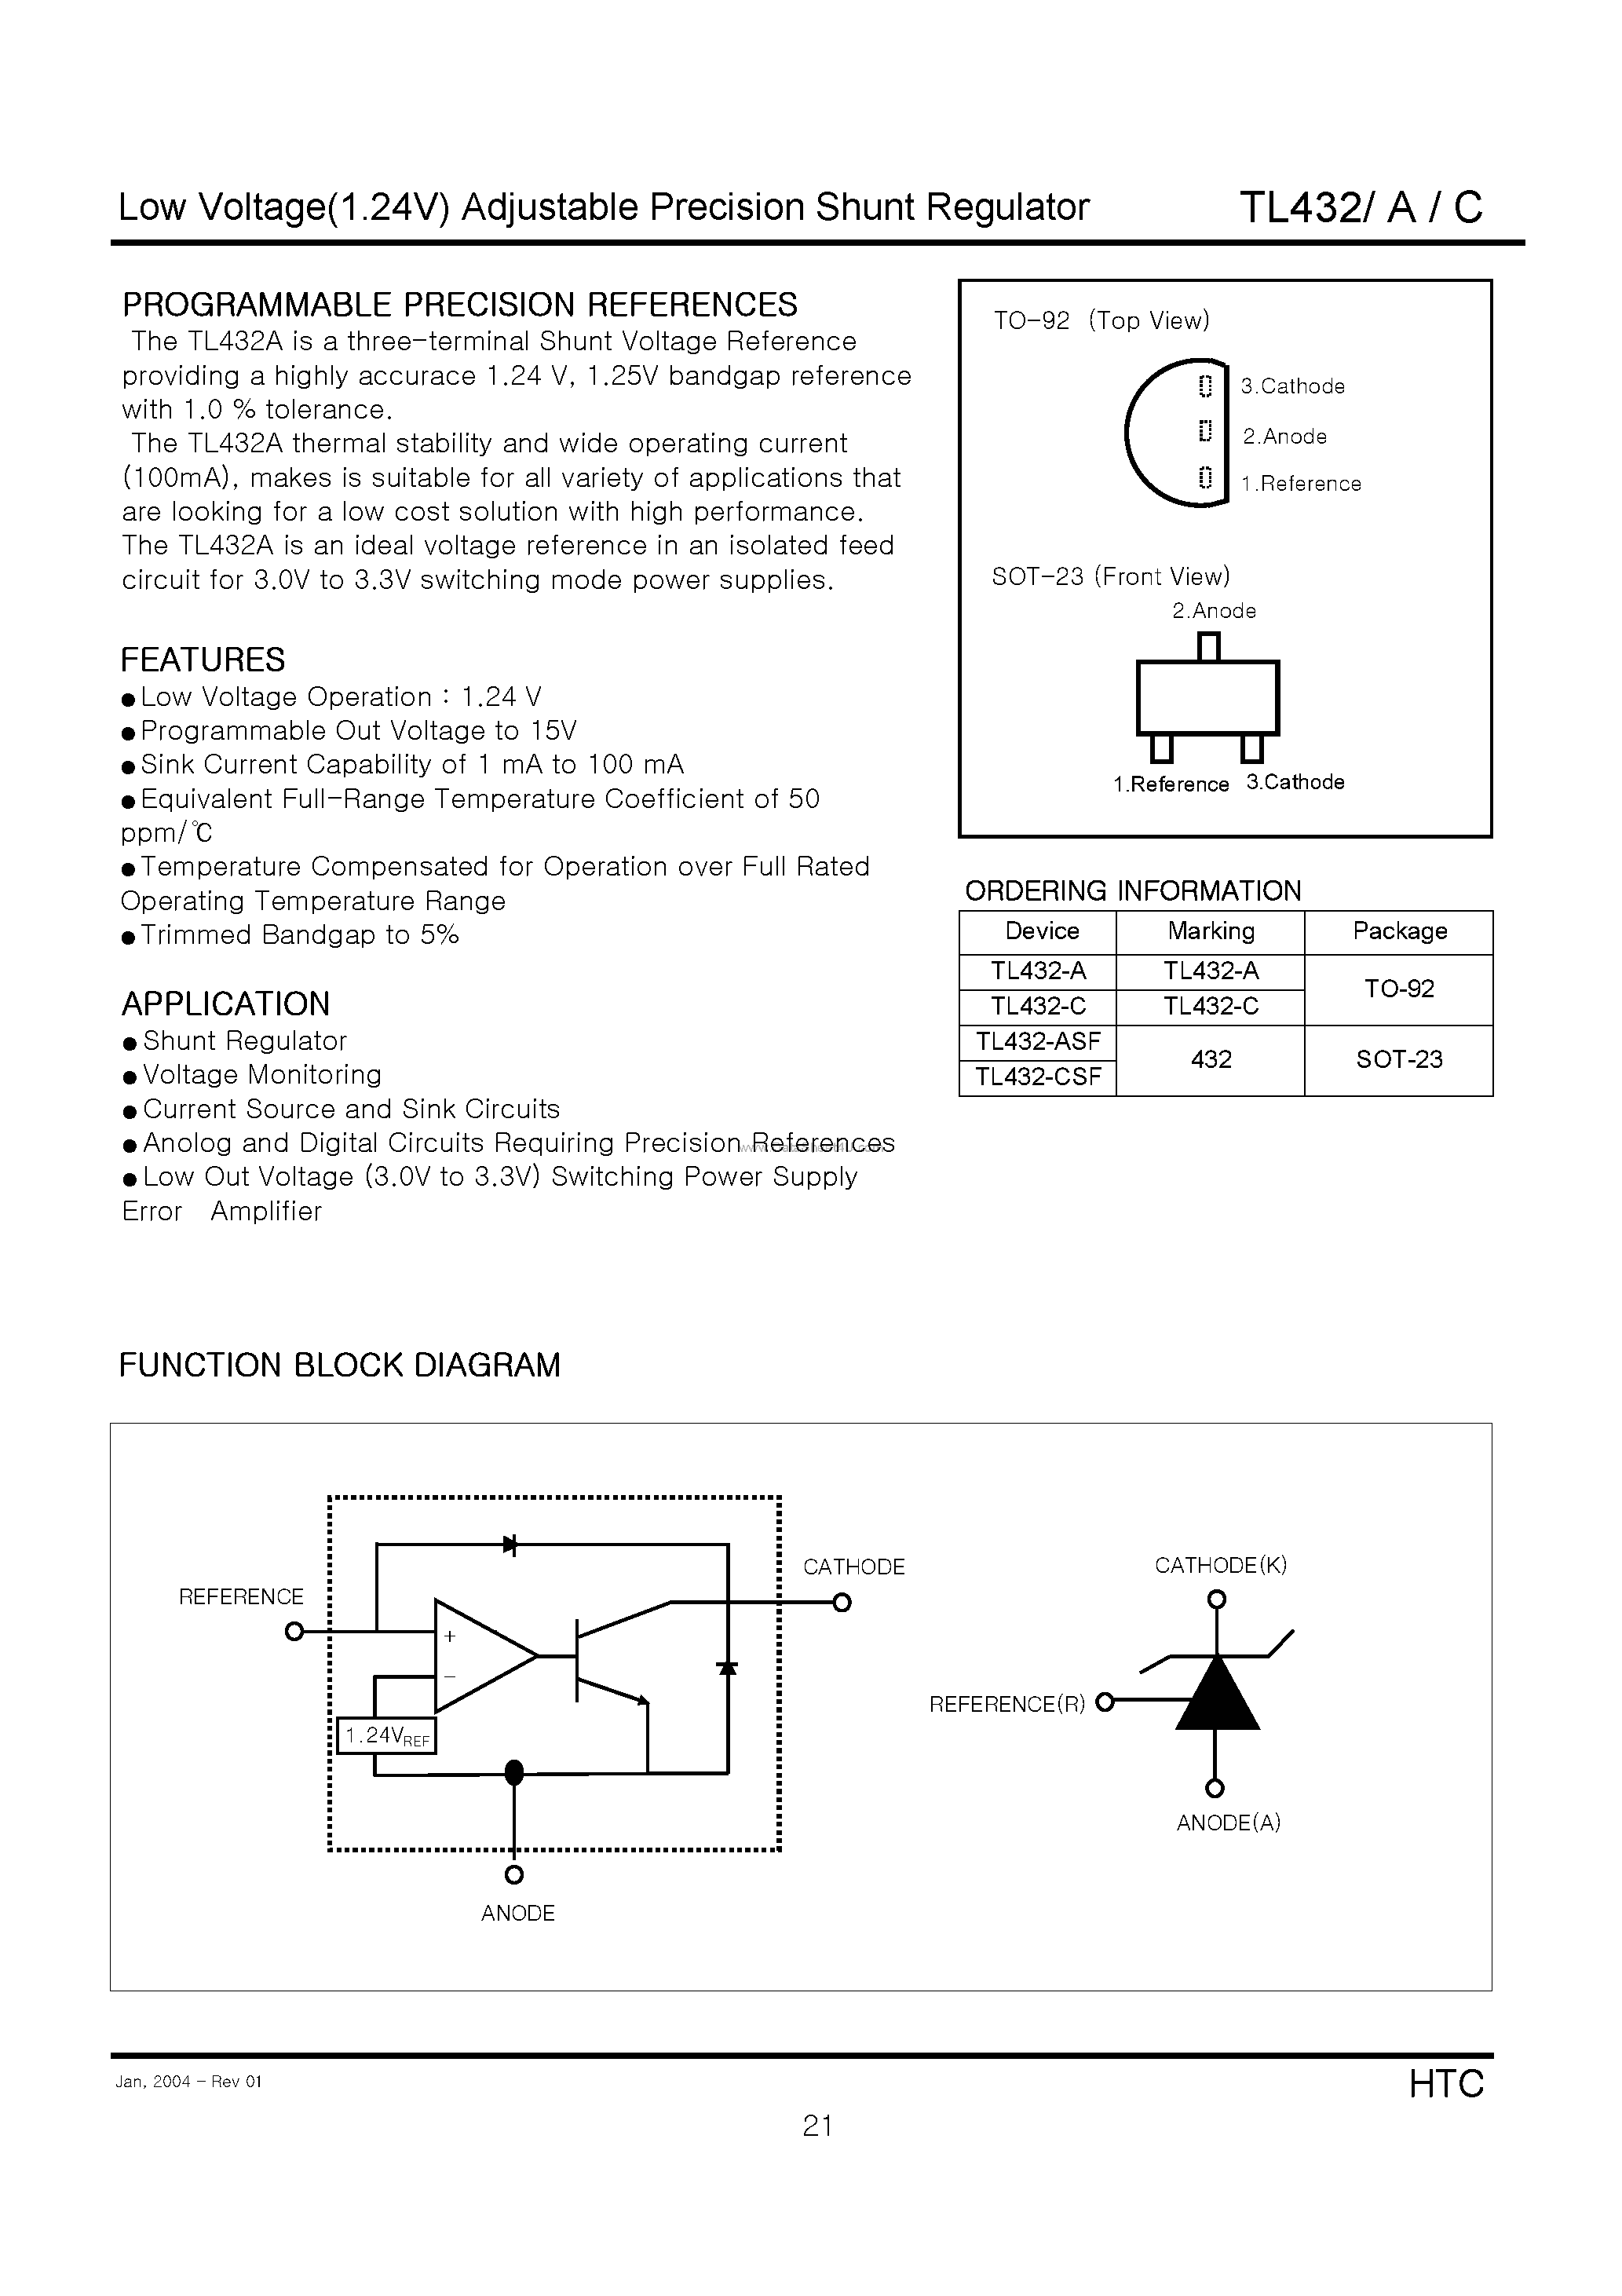 Datasheet TL432 - (TL432x) Low Voltage(1.24V) Adjustable Precision Shunt Regulator page 1